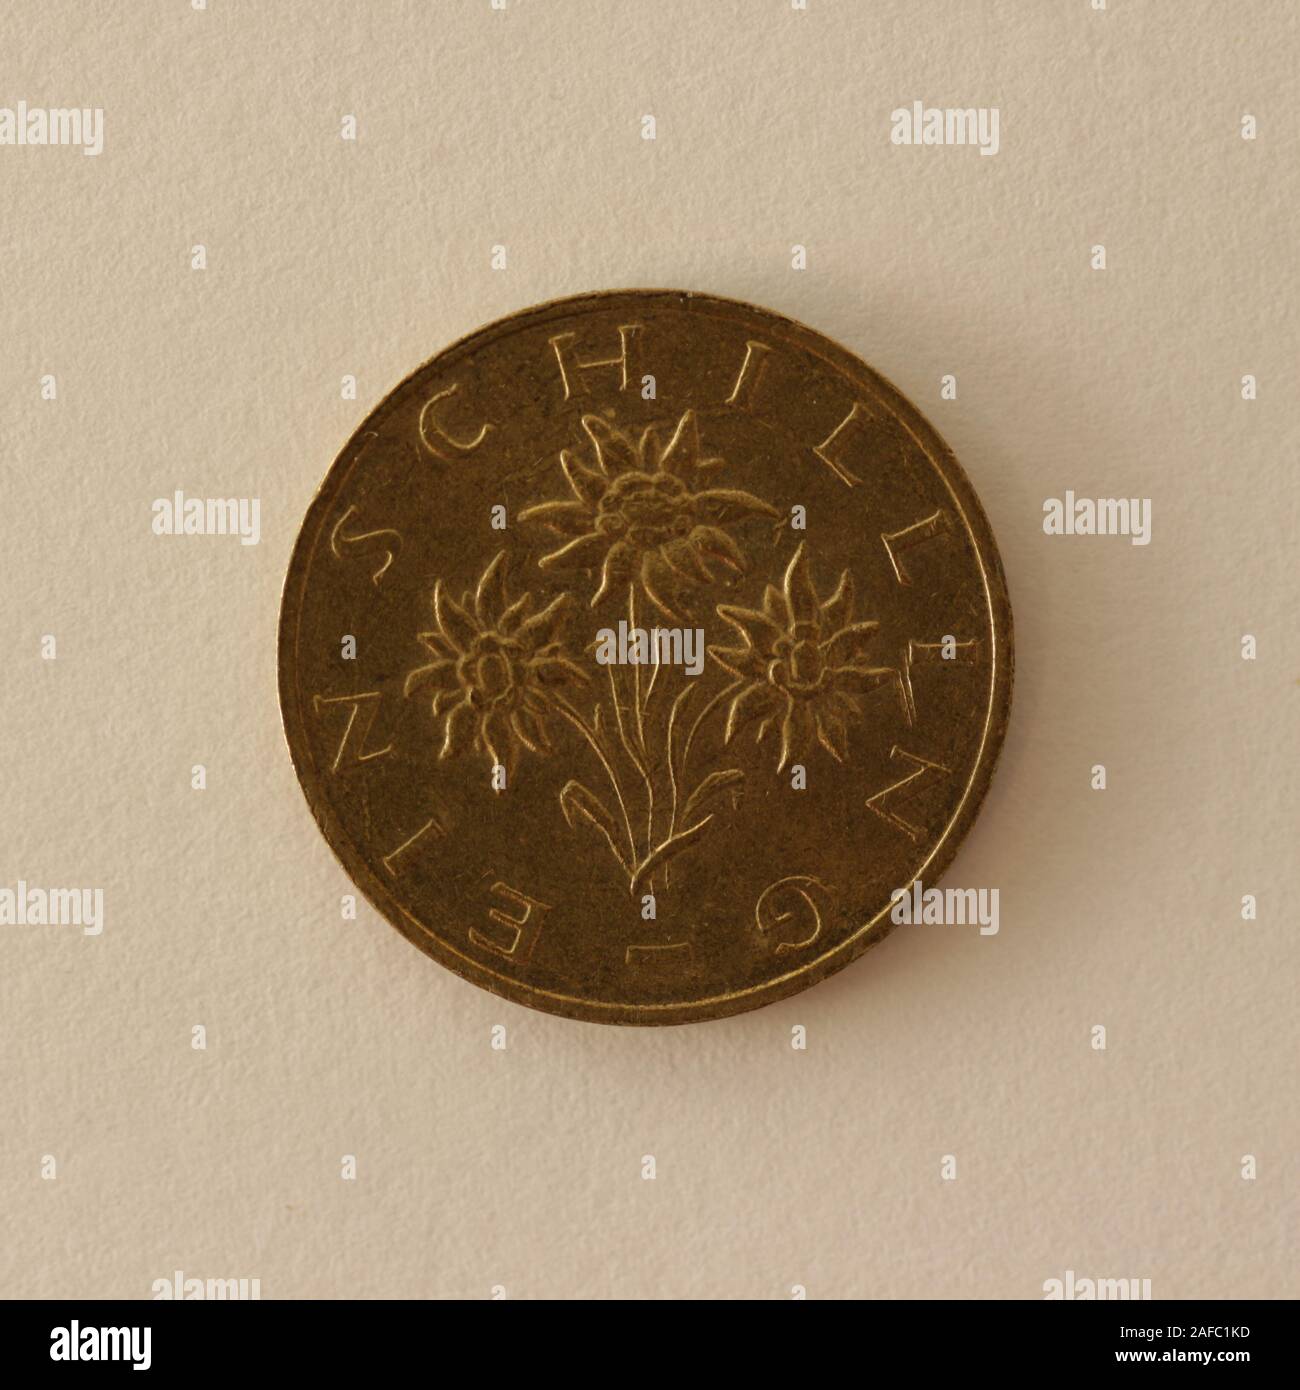 Rückseite einer ehemaligen Österreichischen 1 Schilling Münze Stock Photo